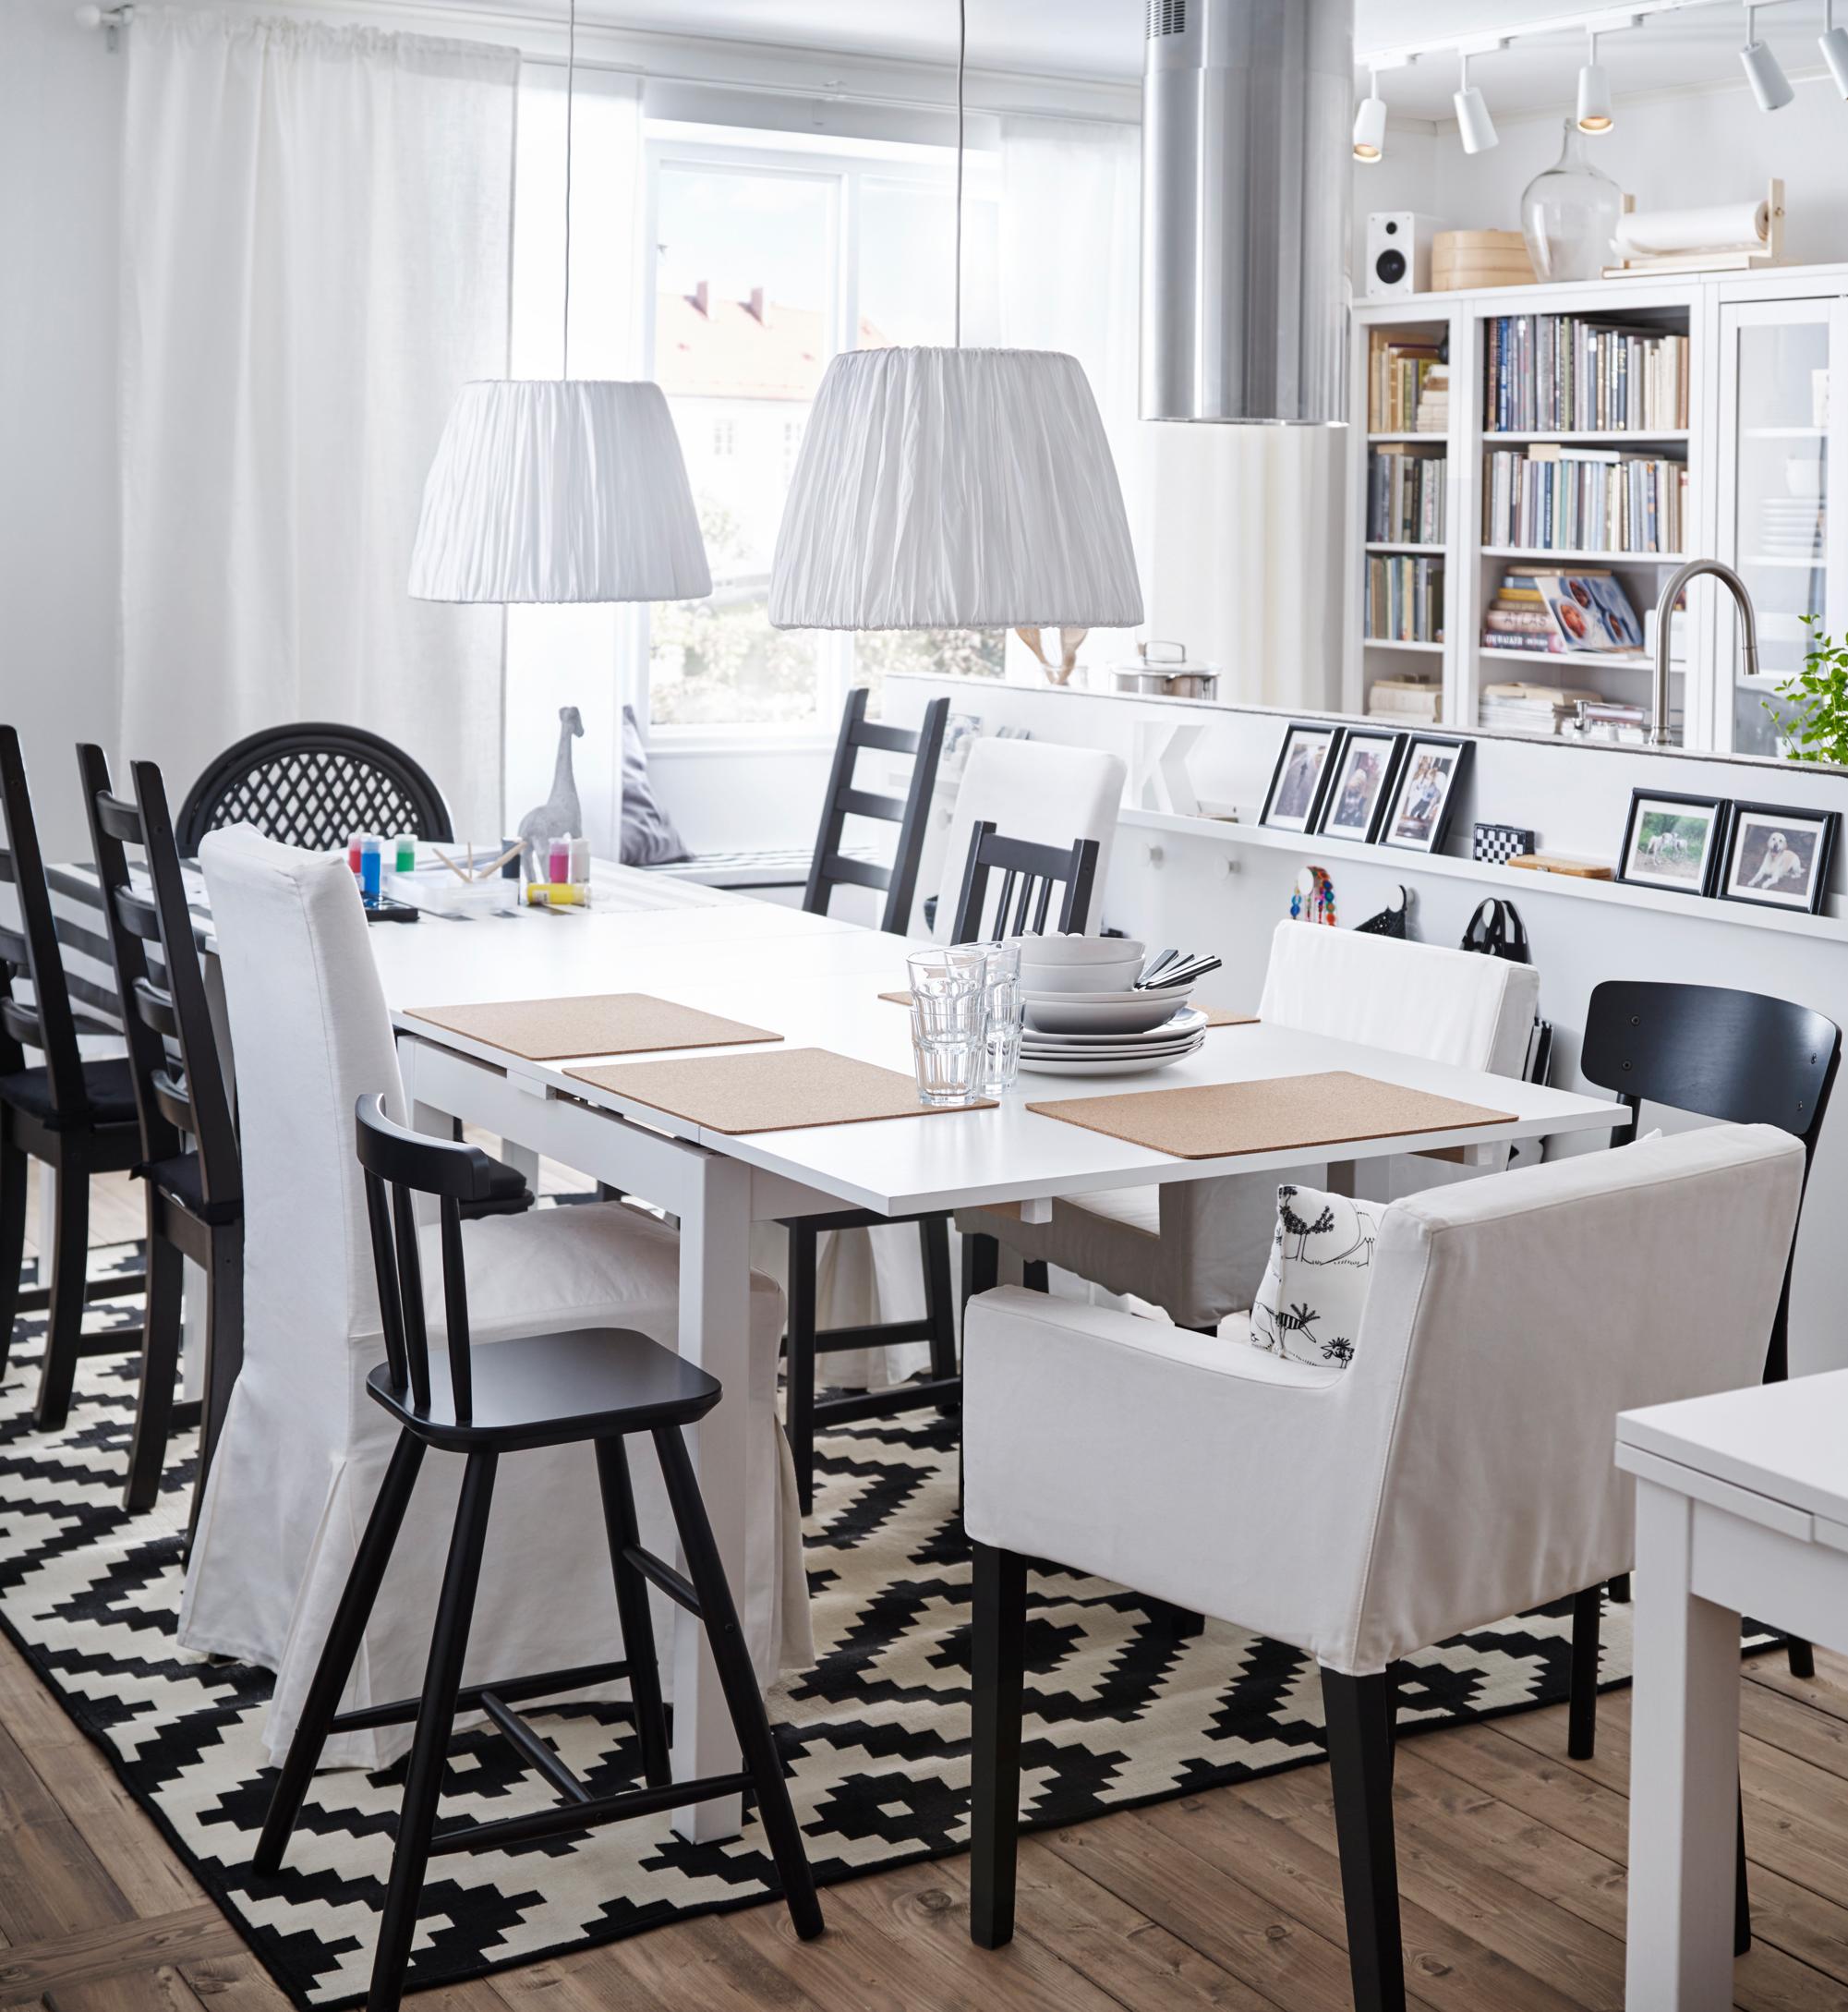 Esszimmer in Schwarz-Weiß #wohnzimmer #esstisch #ikea #weißerstuhl #zimmergestaltung ©Inter IKEA Systems B.V.